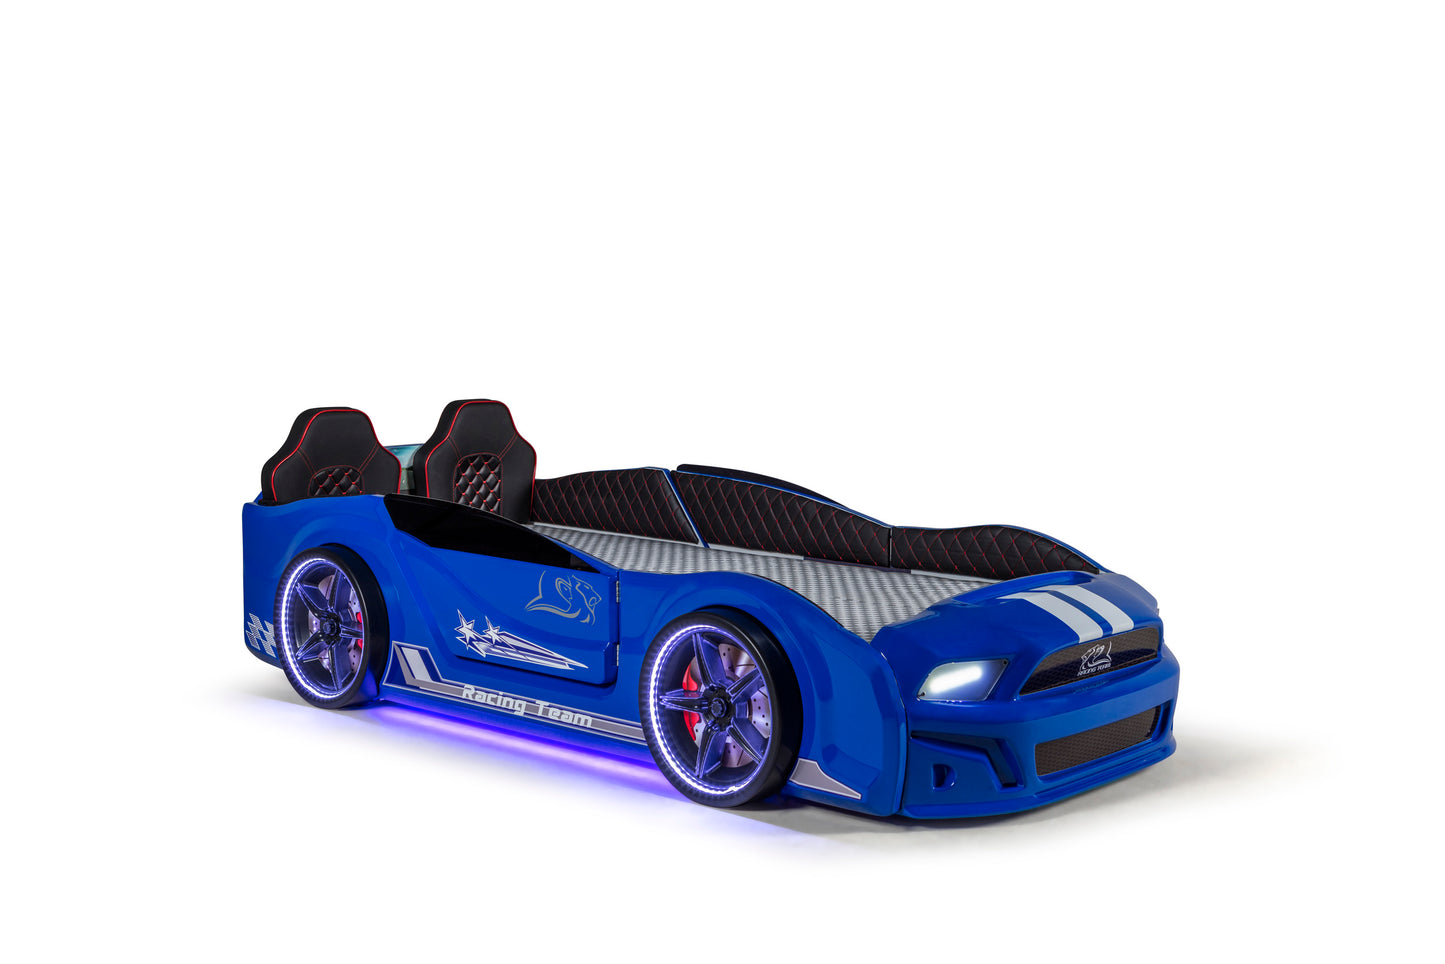 Letto singolo contenitore a forma di auto sportiva MUSTANG colore blu, con apertura porte, materasso incluso.